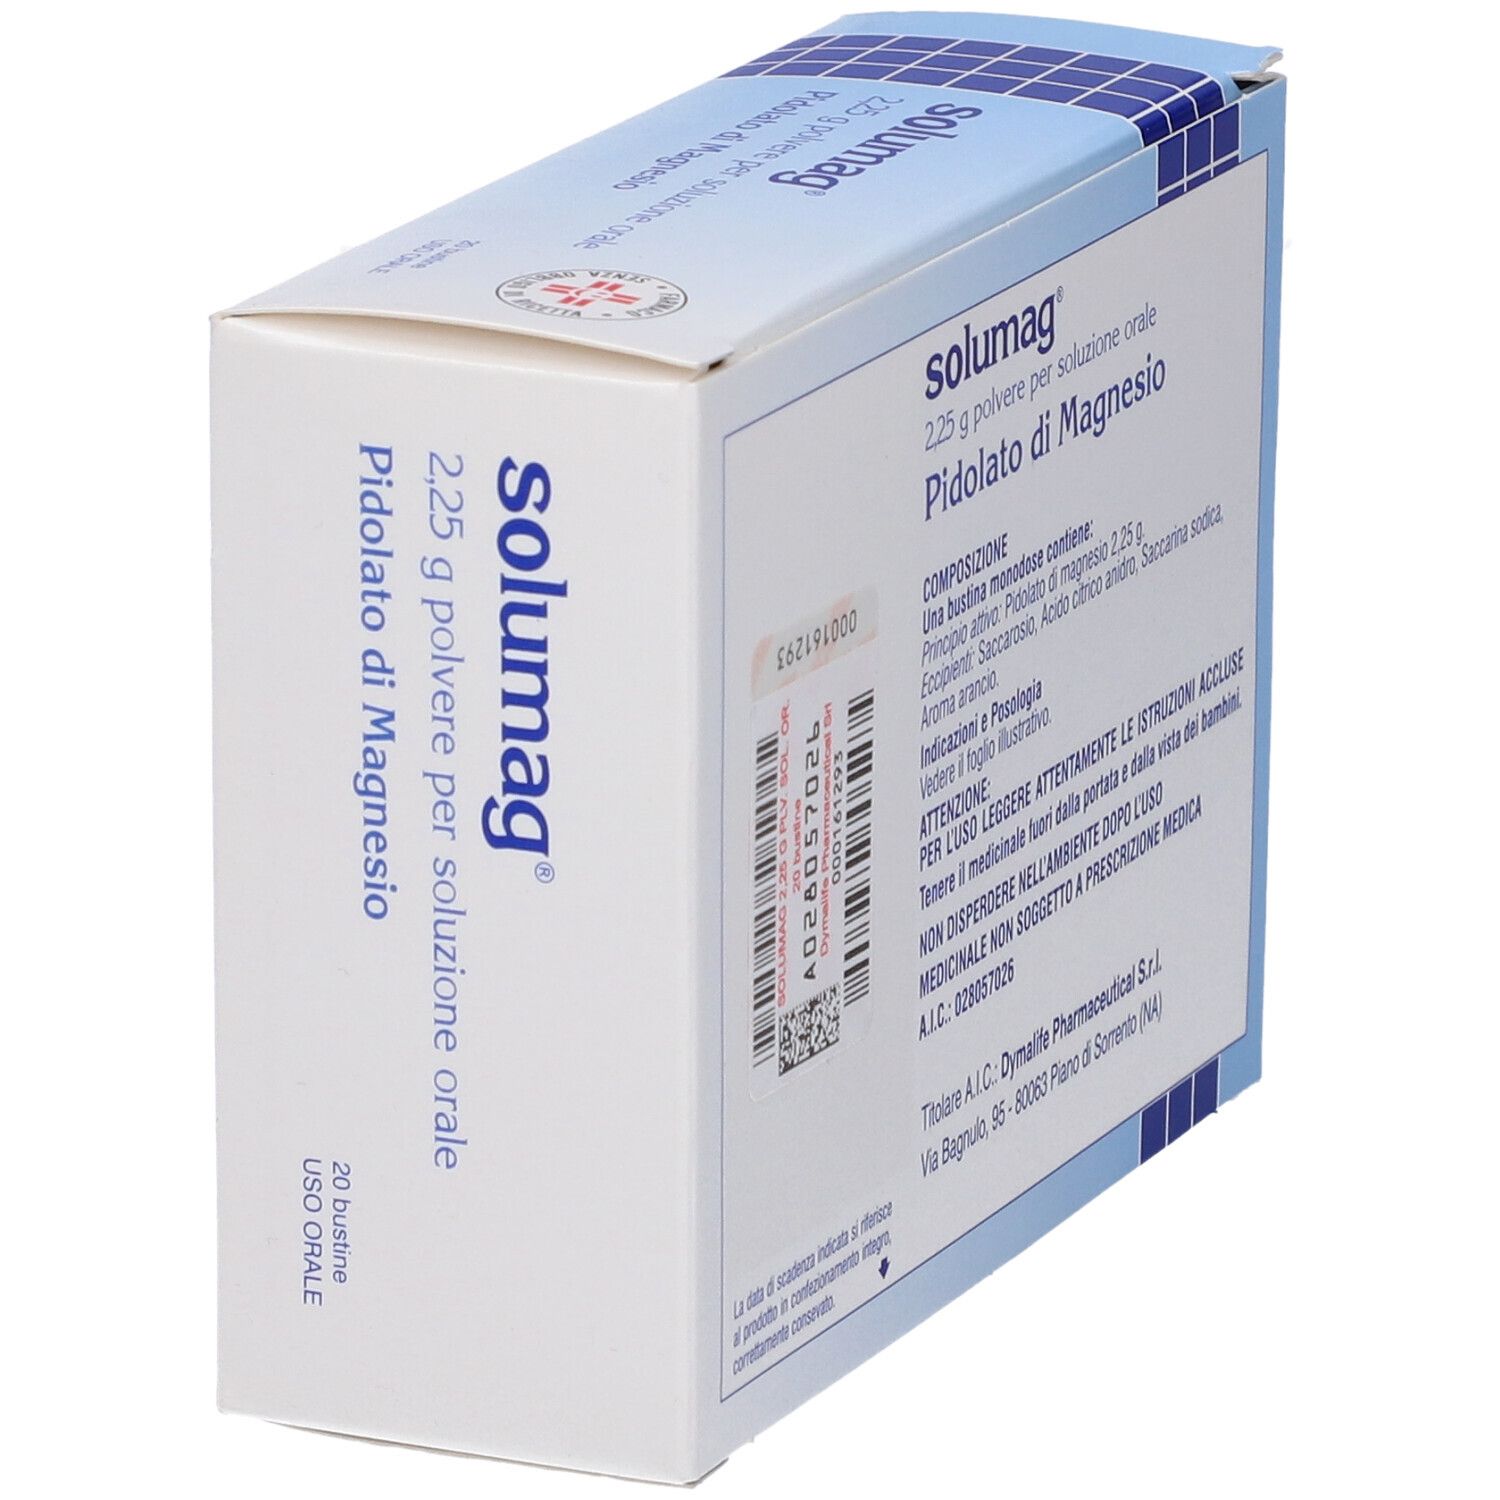 Solumag® 2,25 g Polvere per Soluzione Orale